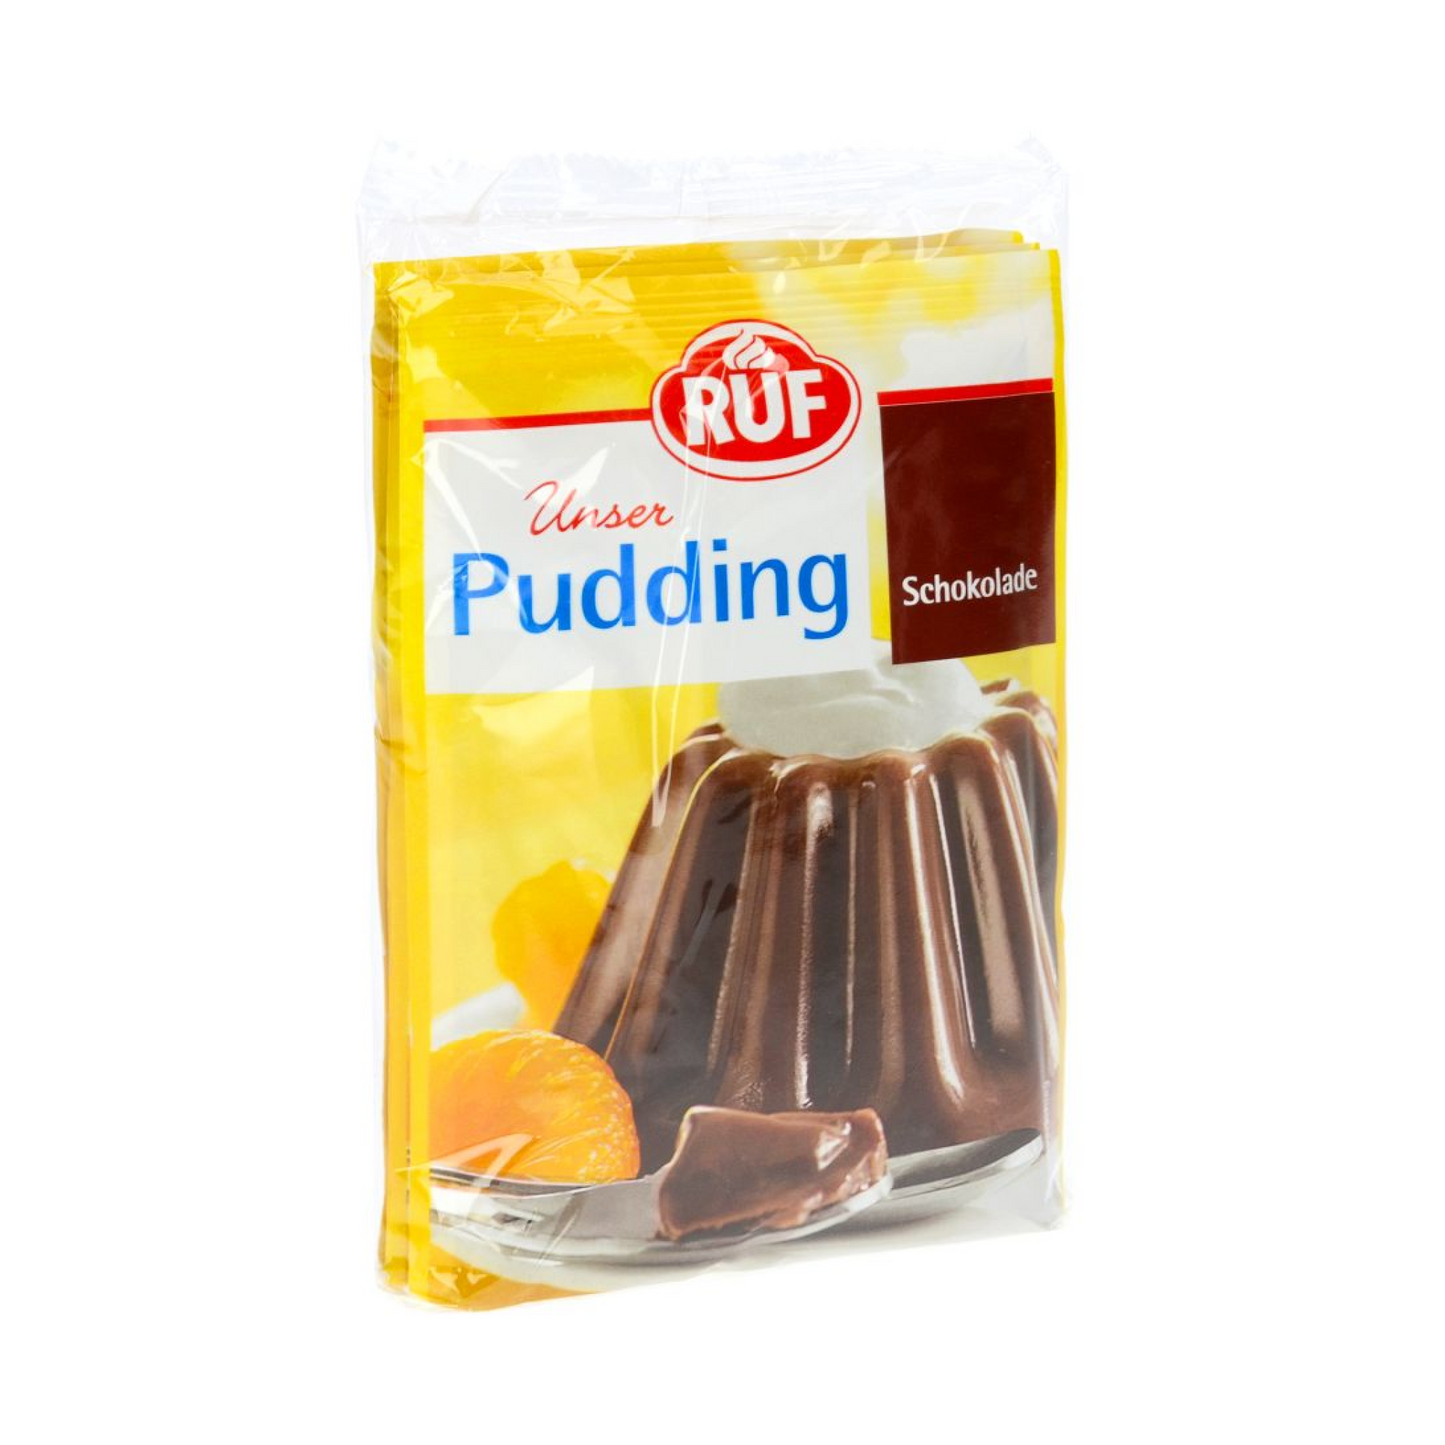 RUF Chocolate Pudding 3 pack 41g